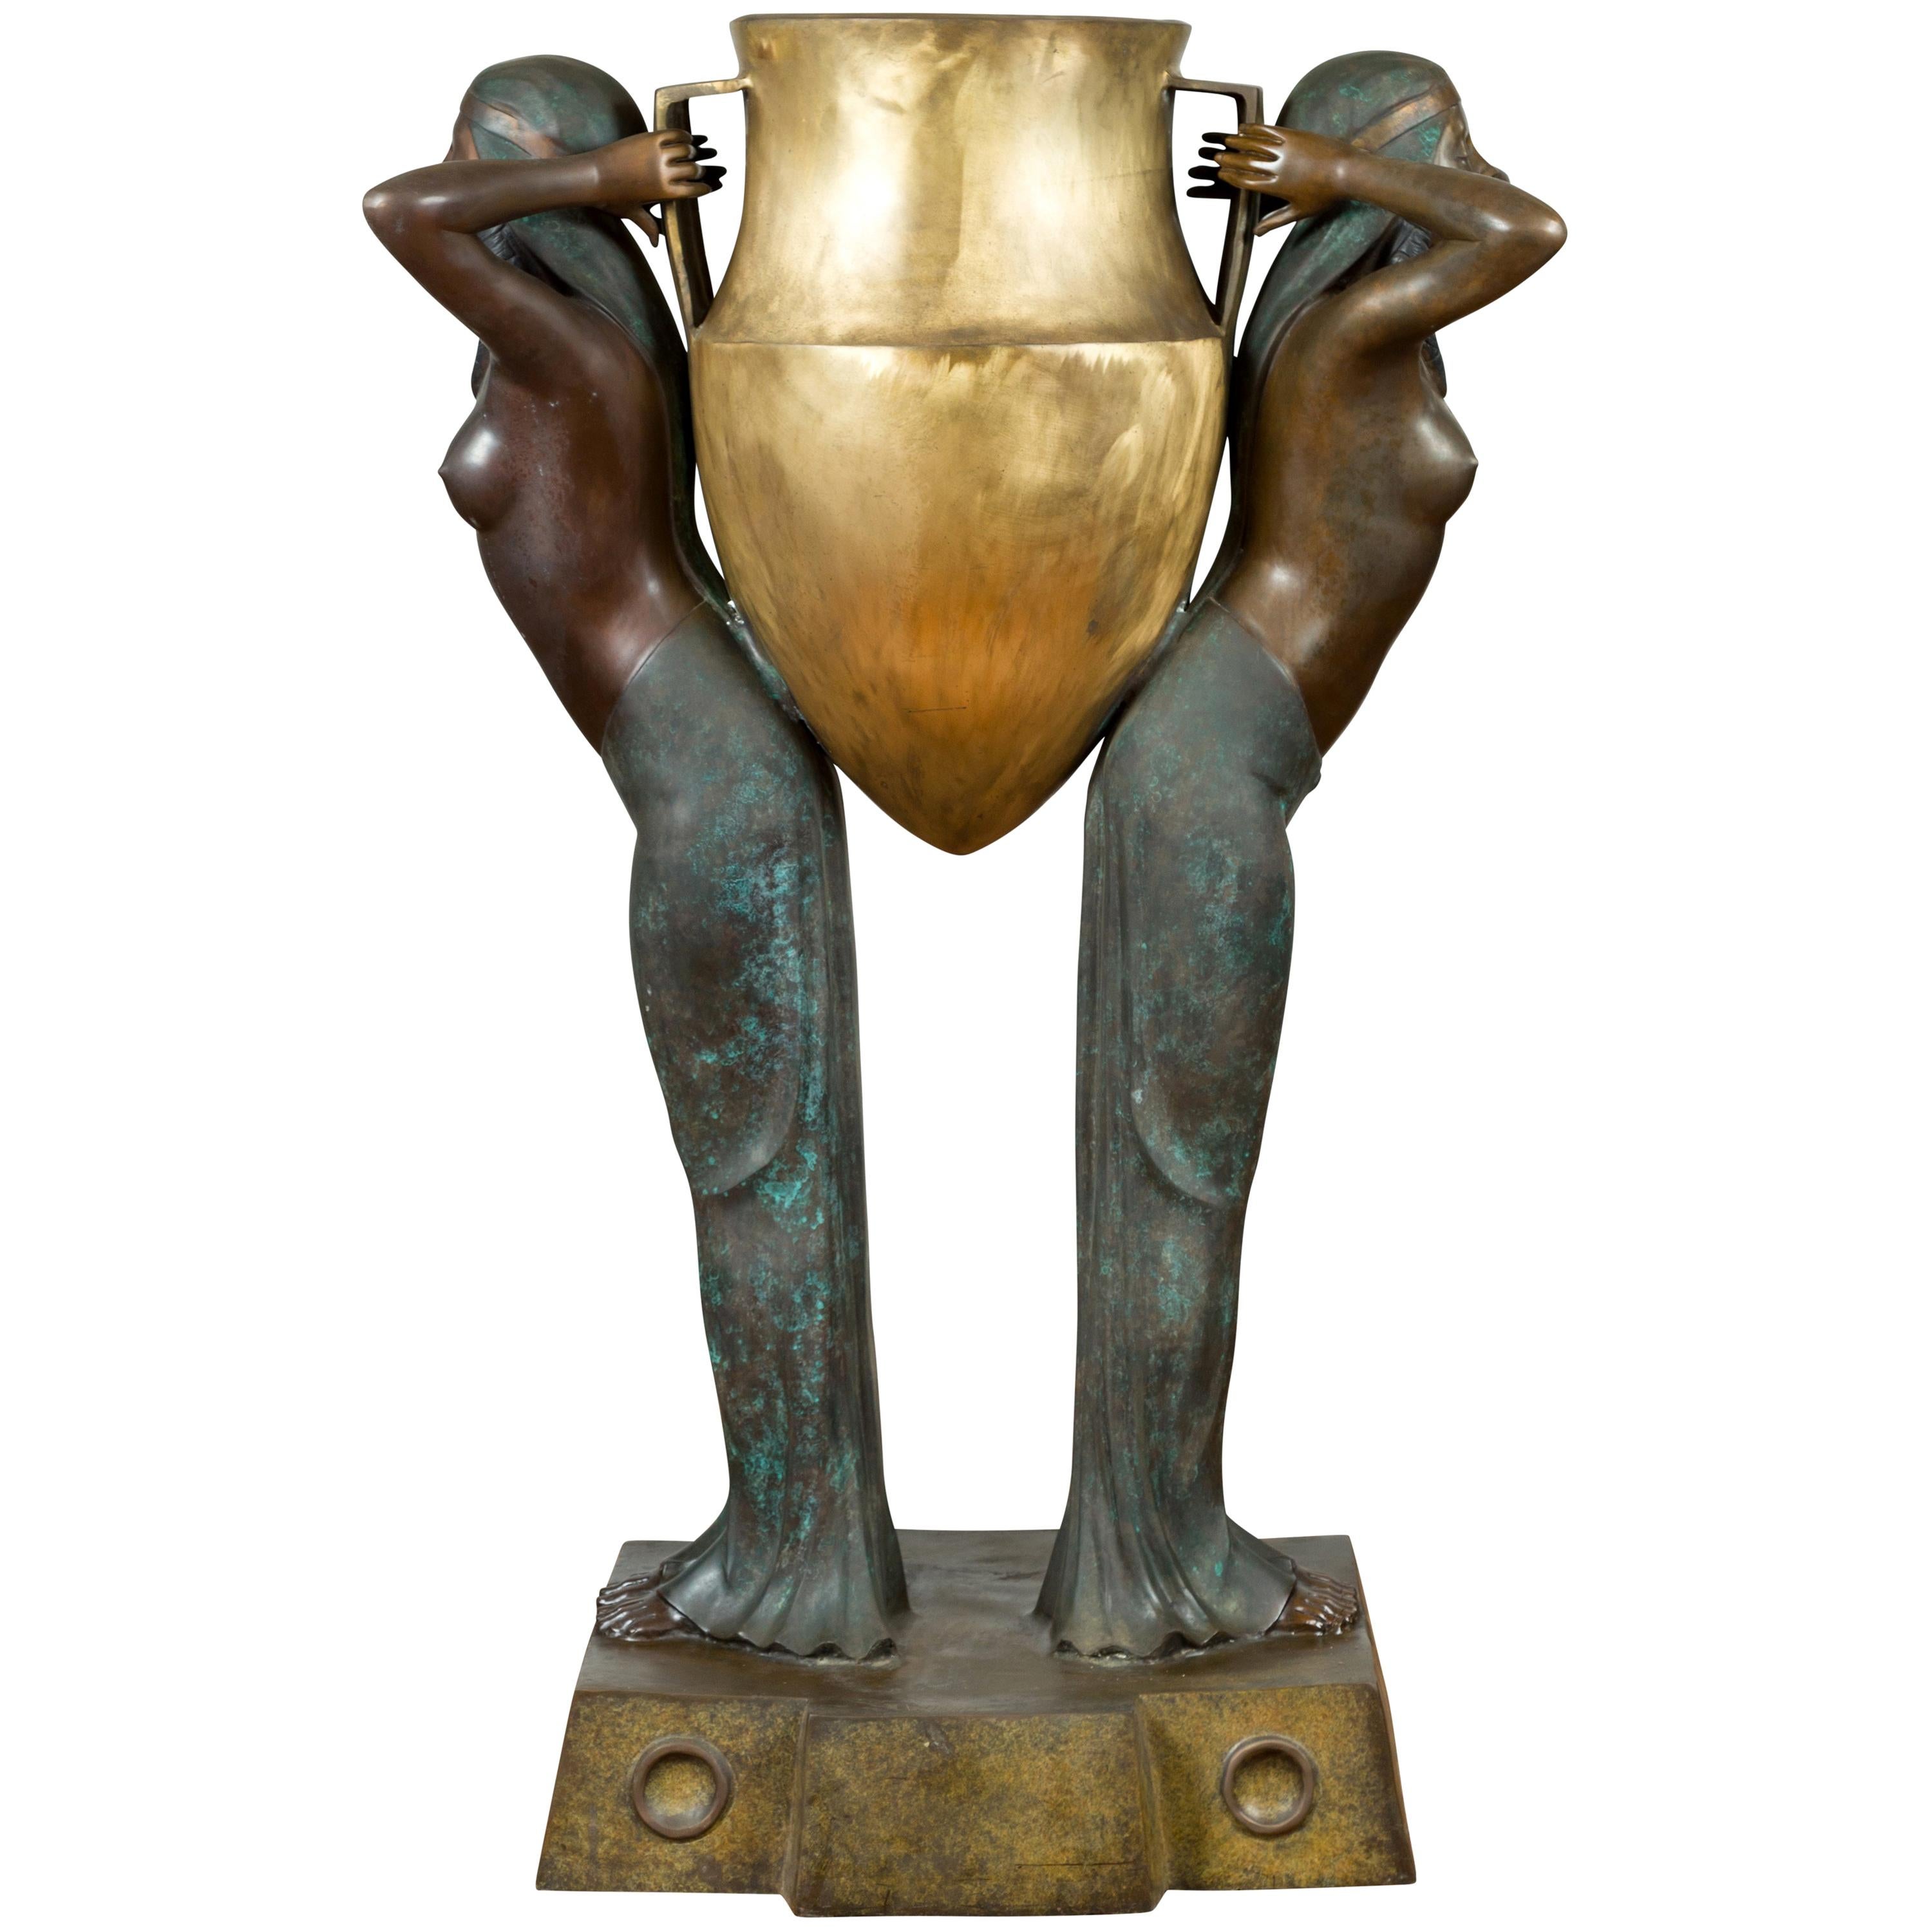 Vieille jardinière en bronze de style égyptien représentant deux jeunes filles emportant une grande urne